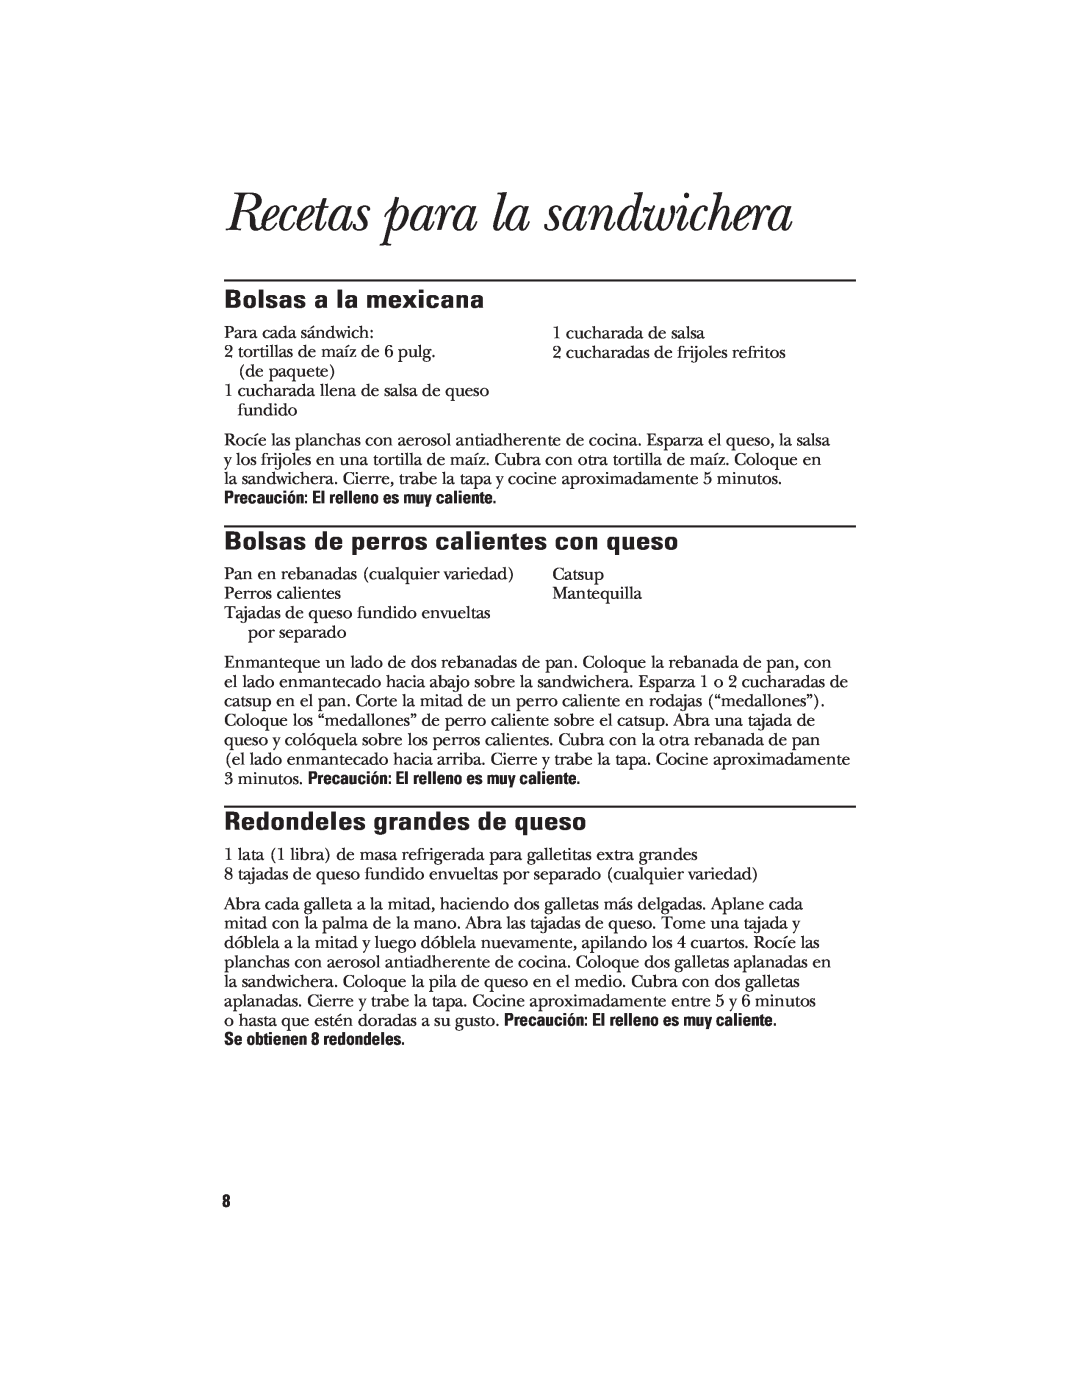 GE 840085700, 106582 manual Recetas para la sandwichera, Bolsas a la mexicana, Bolsas de perros calientes con queso 